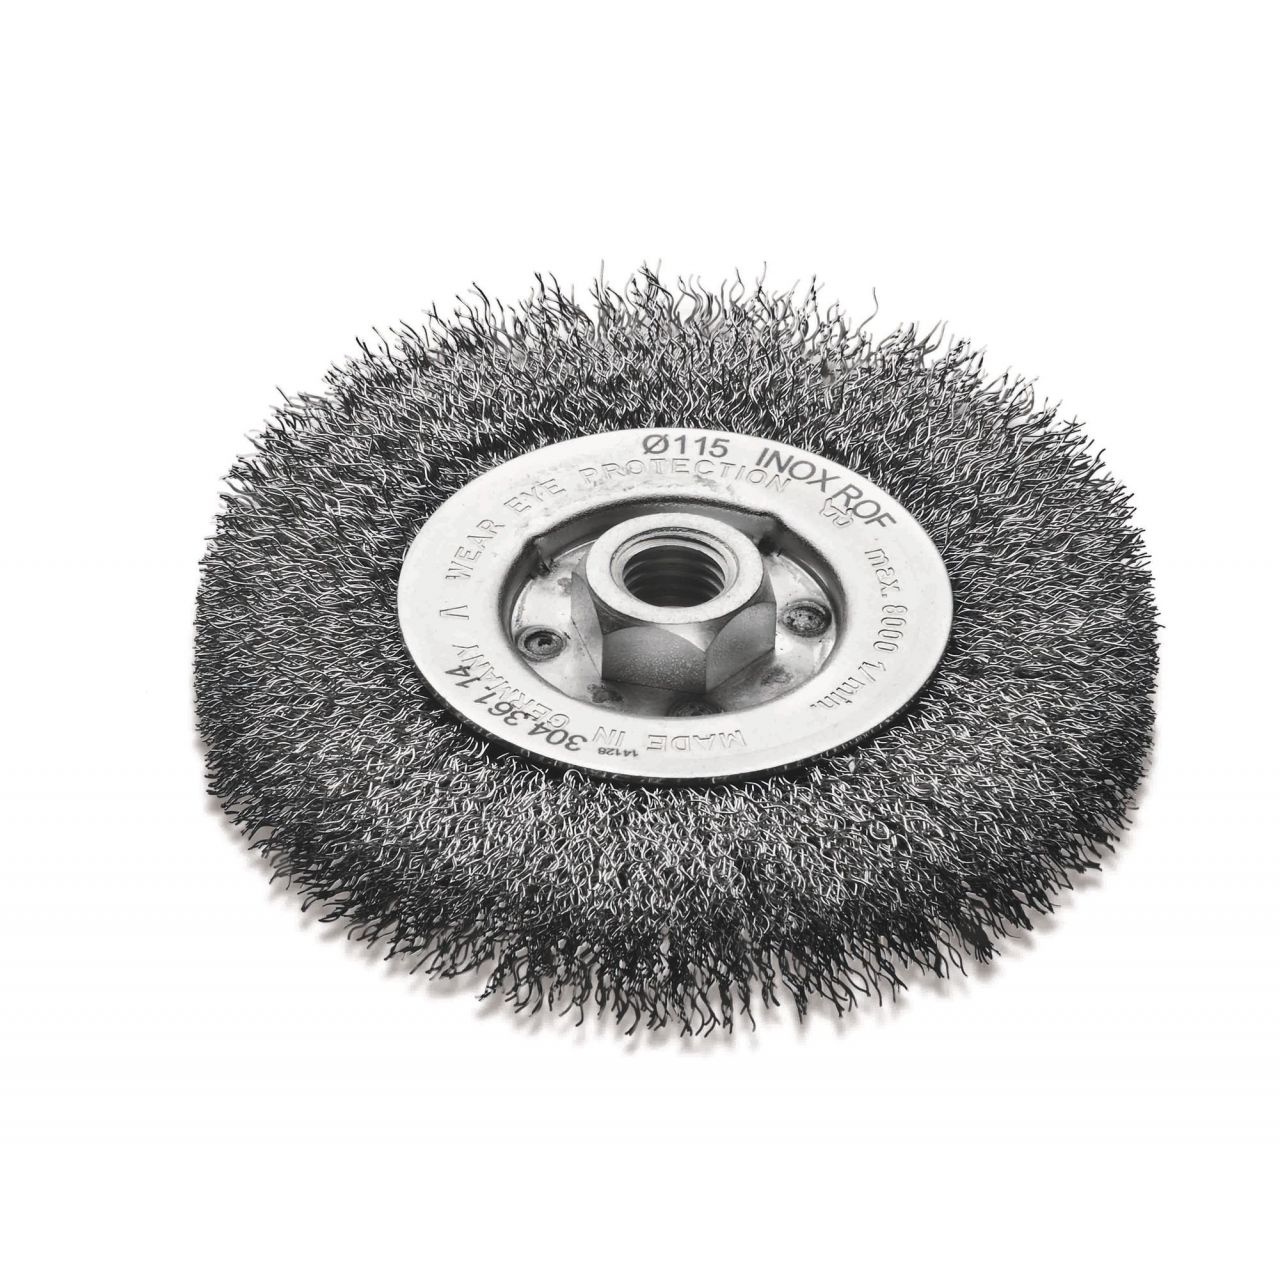 Lessmann Cepillo circular con casquillo roscado alambre latonado ondulado 30476114